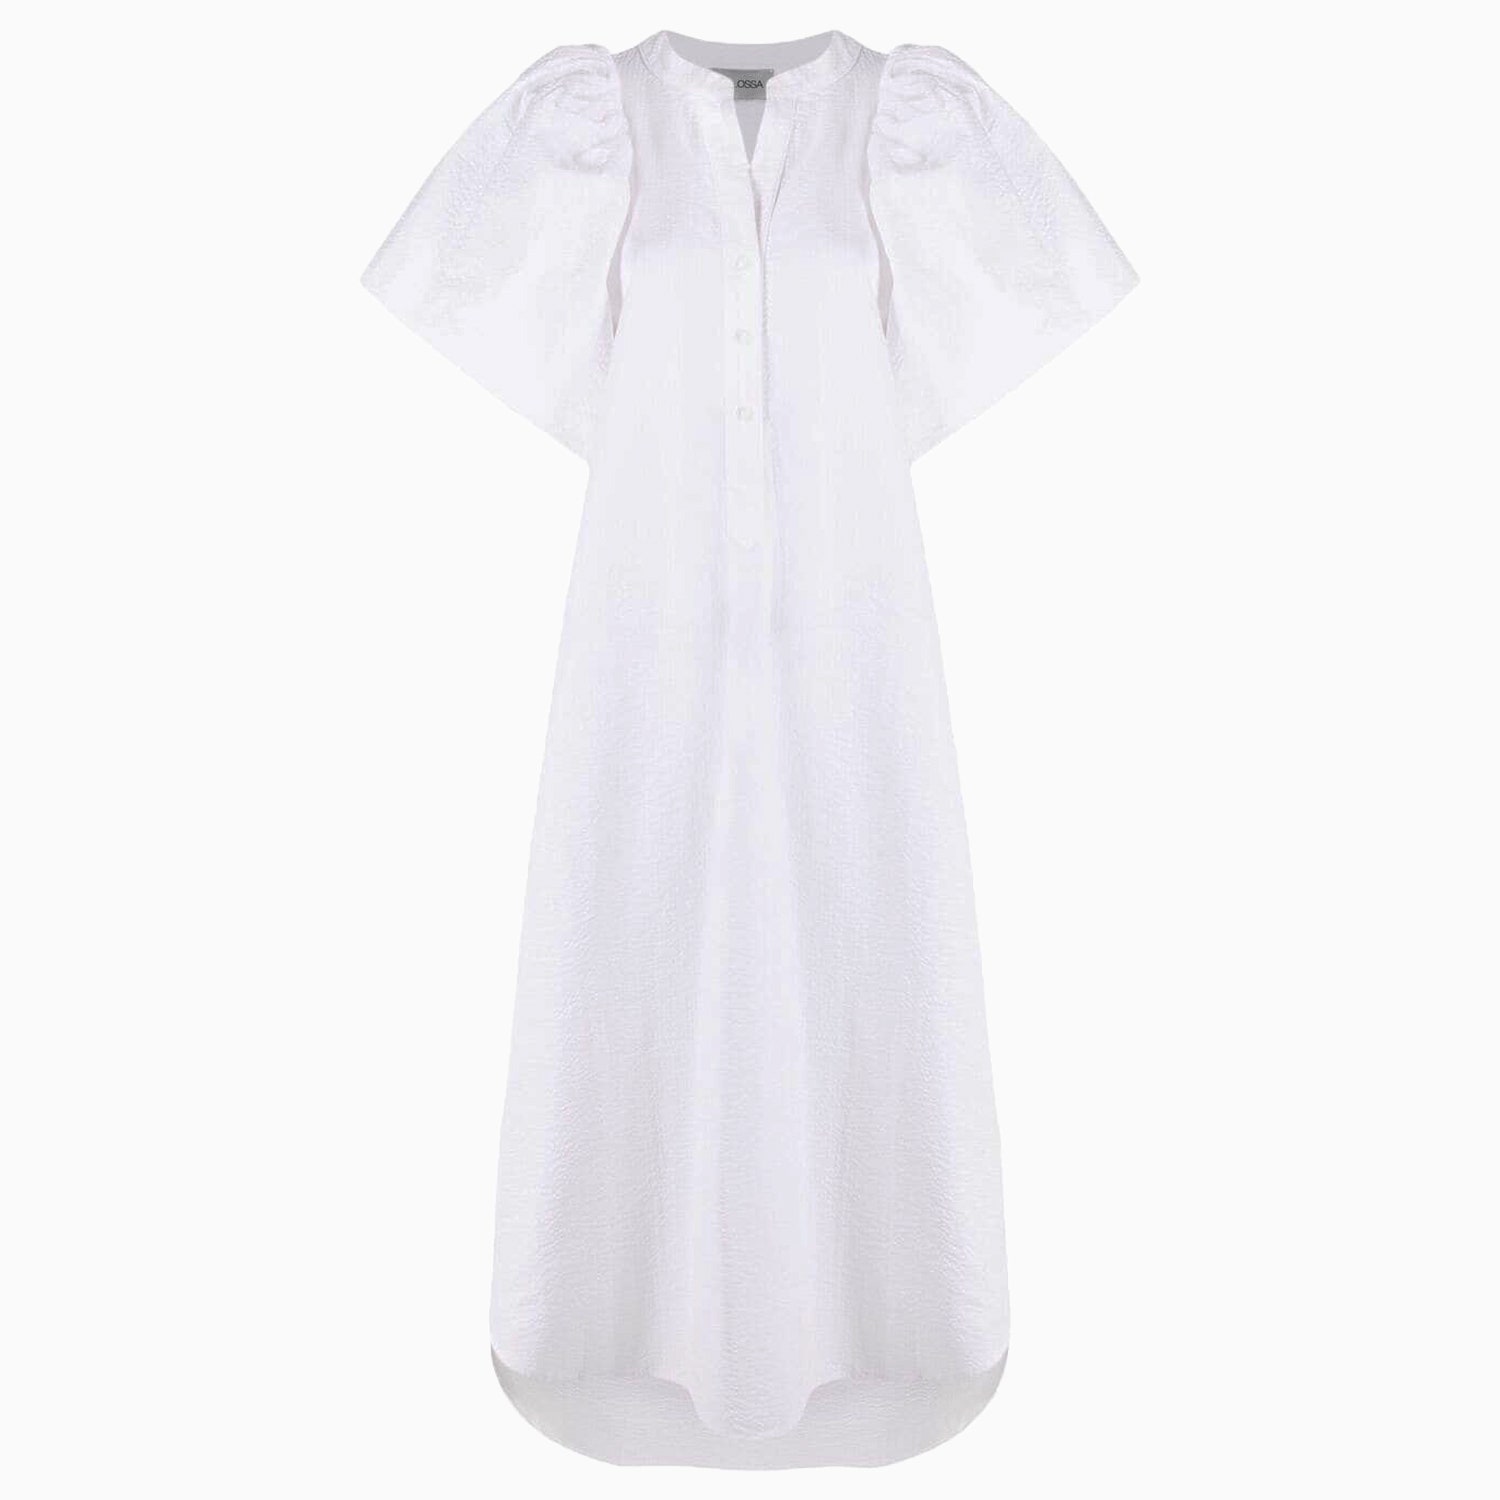 Balossa White Shirt 18604 рубля farfetch.com